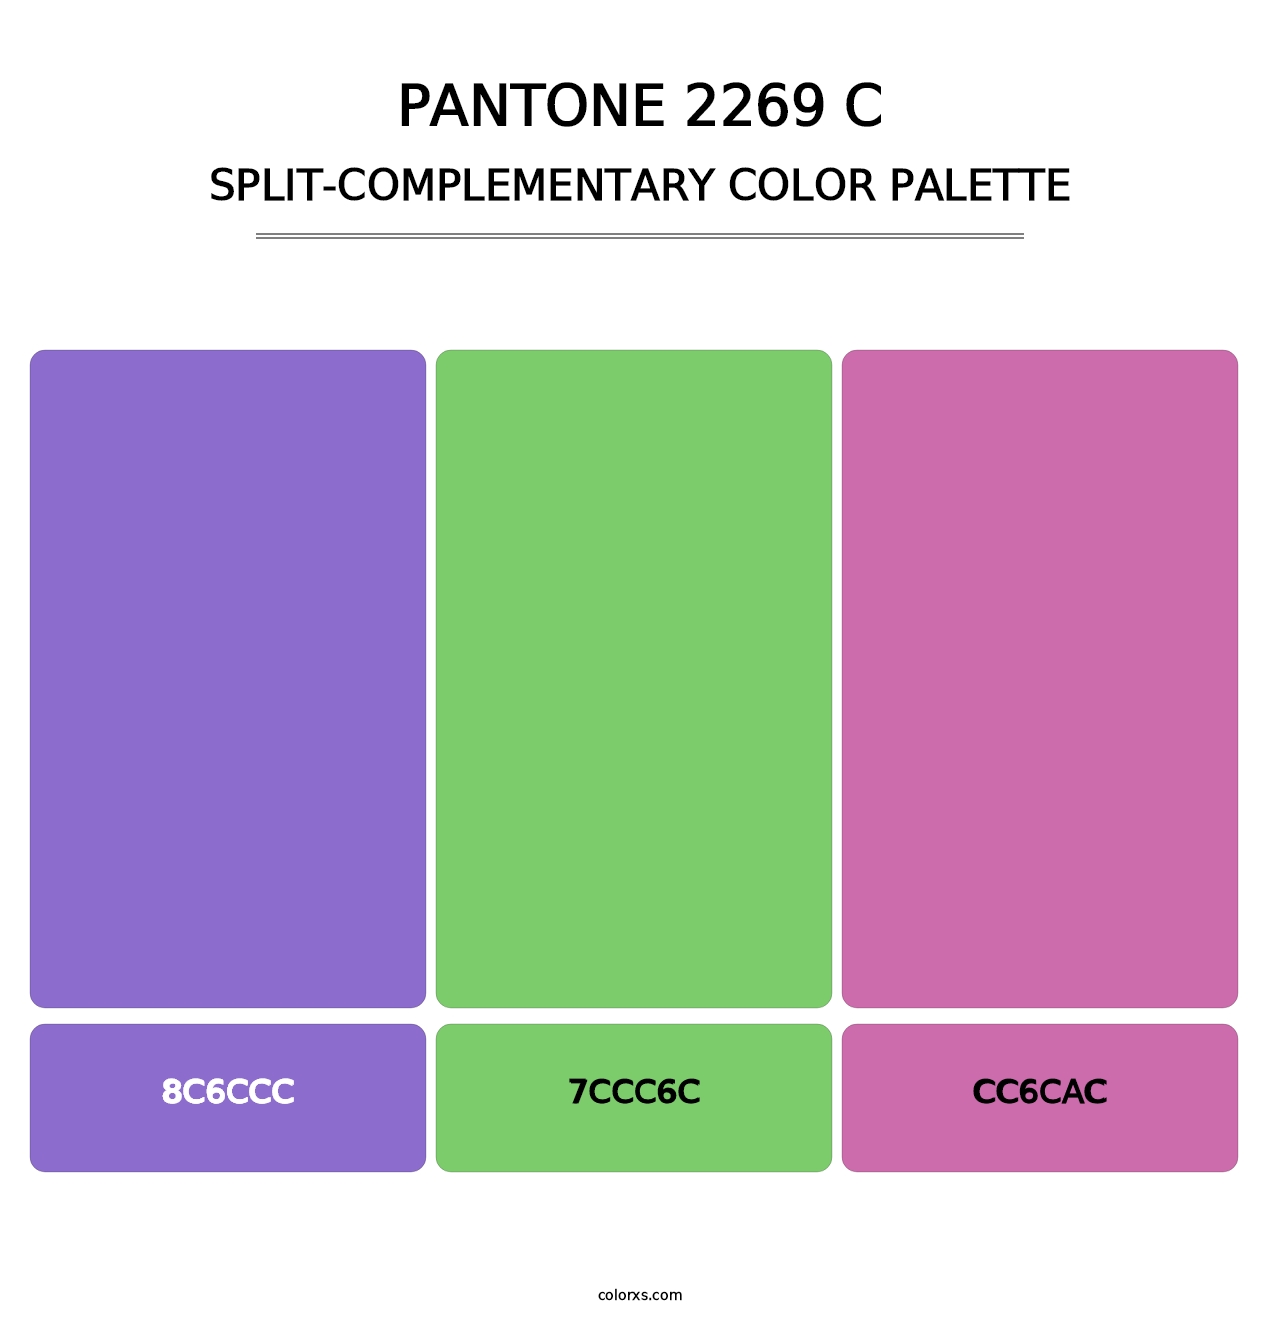 PANTONE 2269 C - Split-Complementary Color Palette